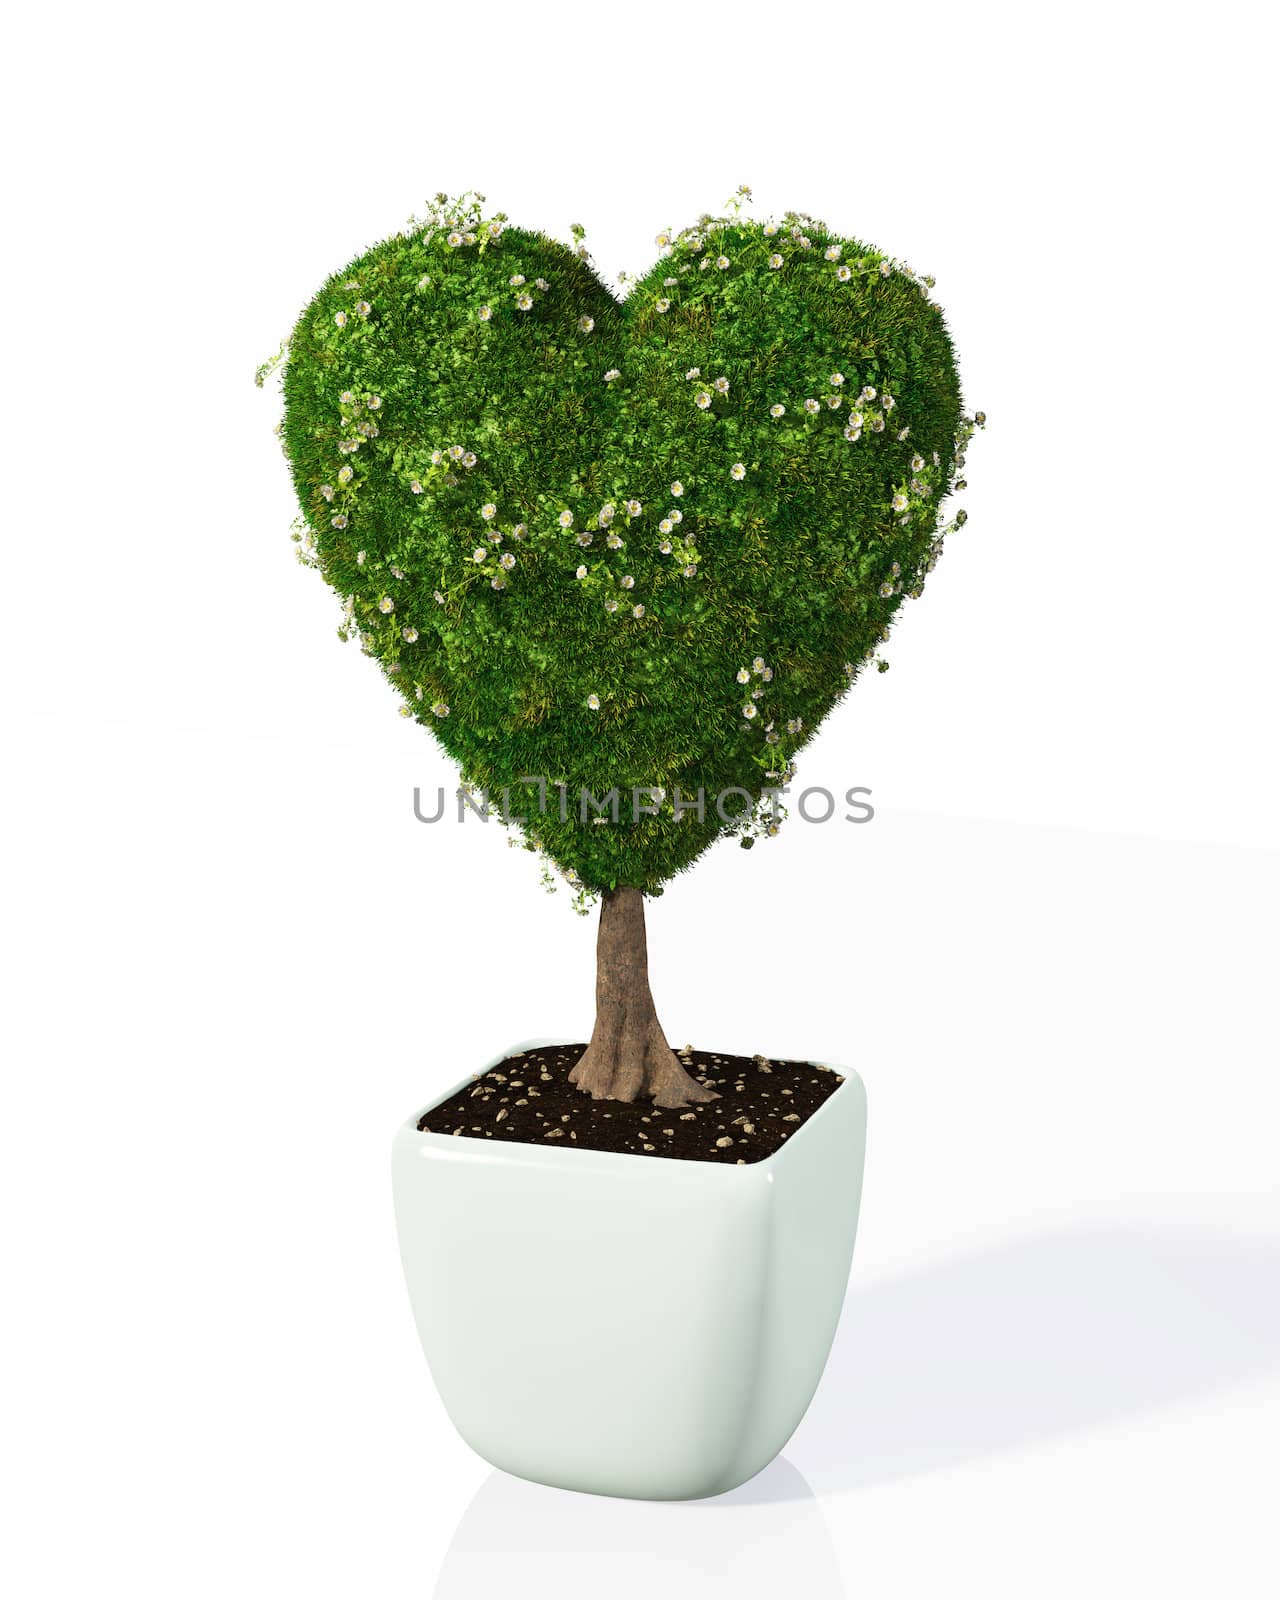 a plant shaped like a heart by TaiChesco